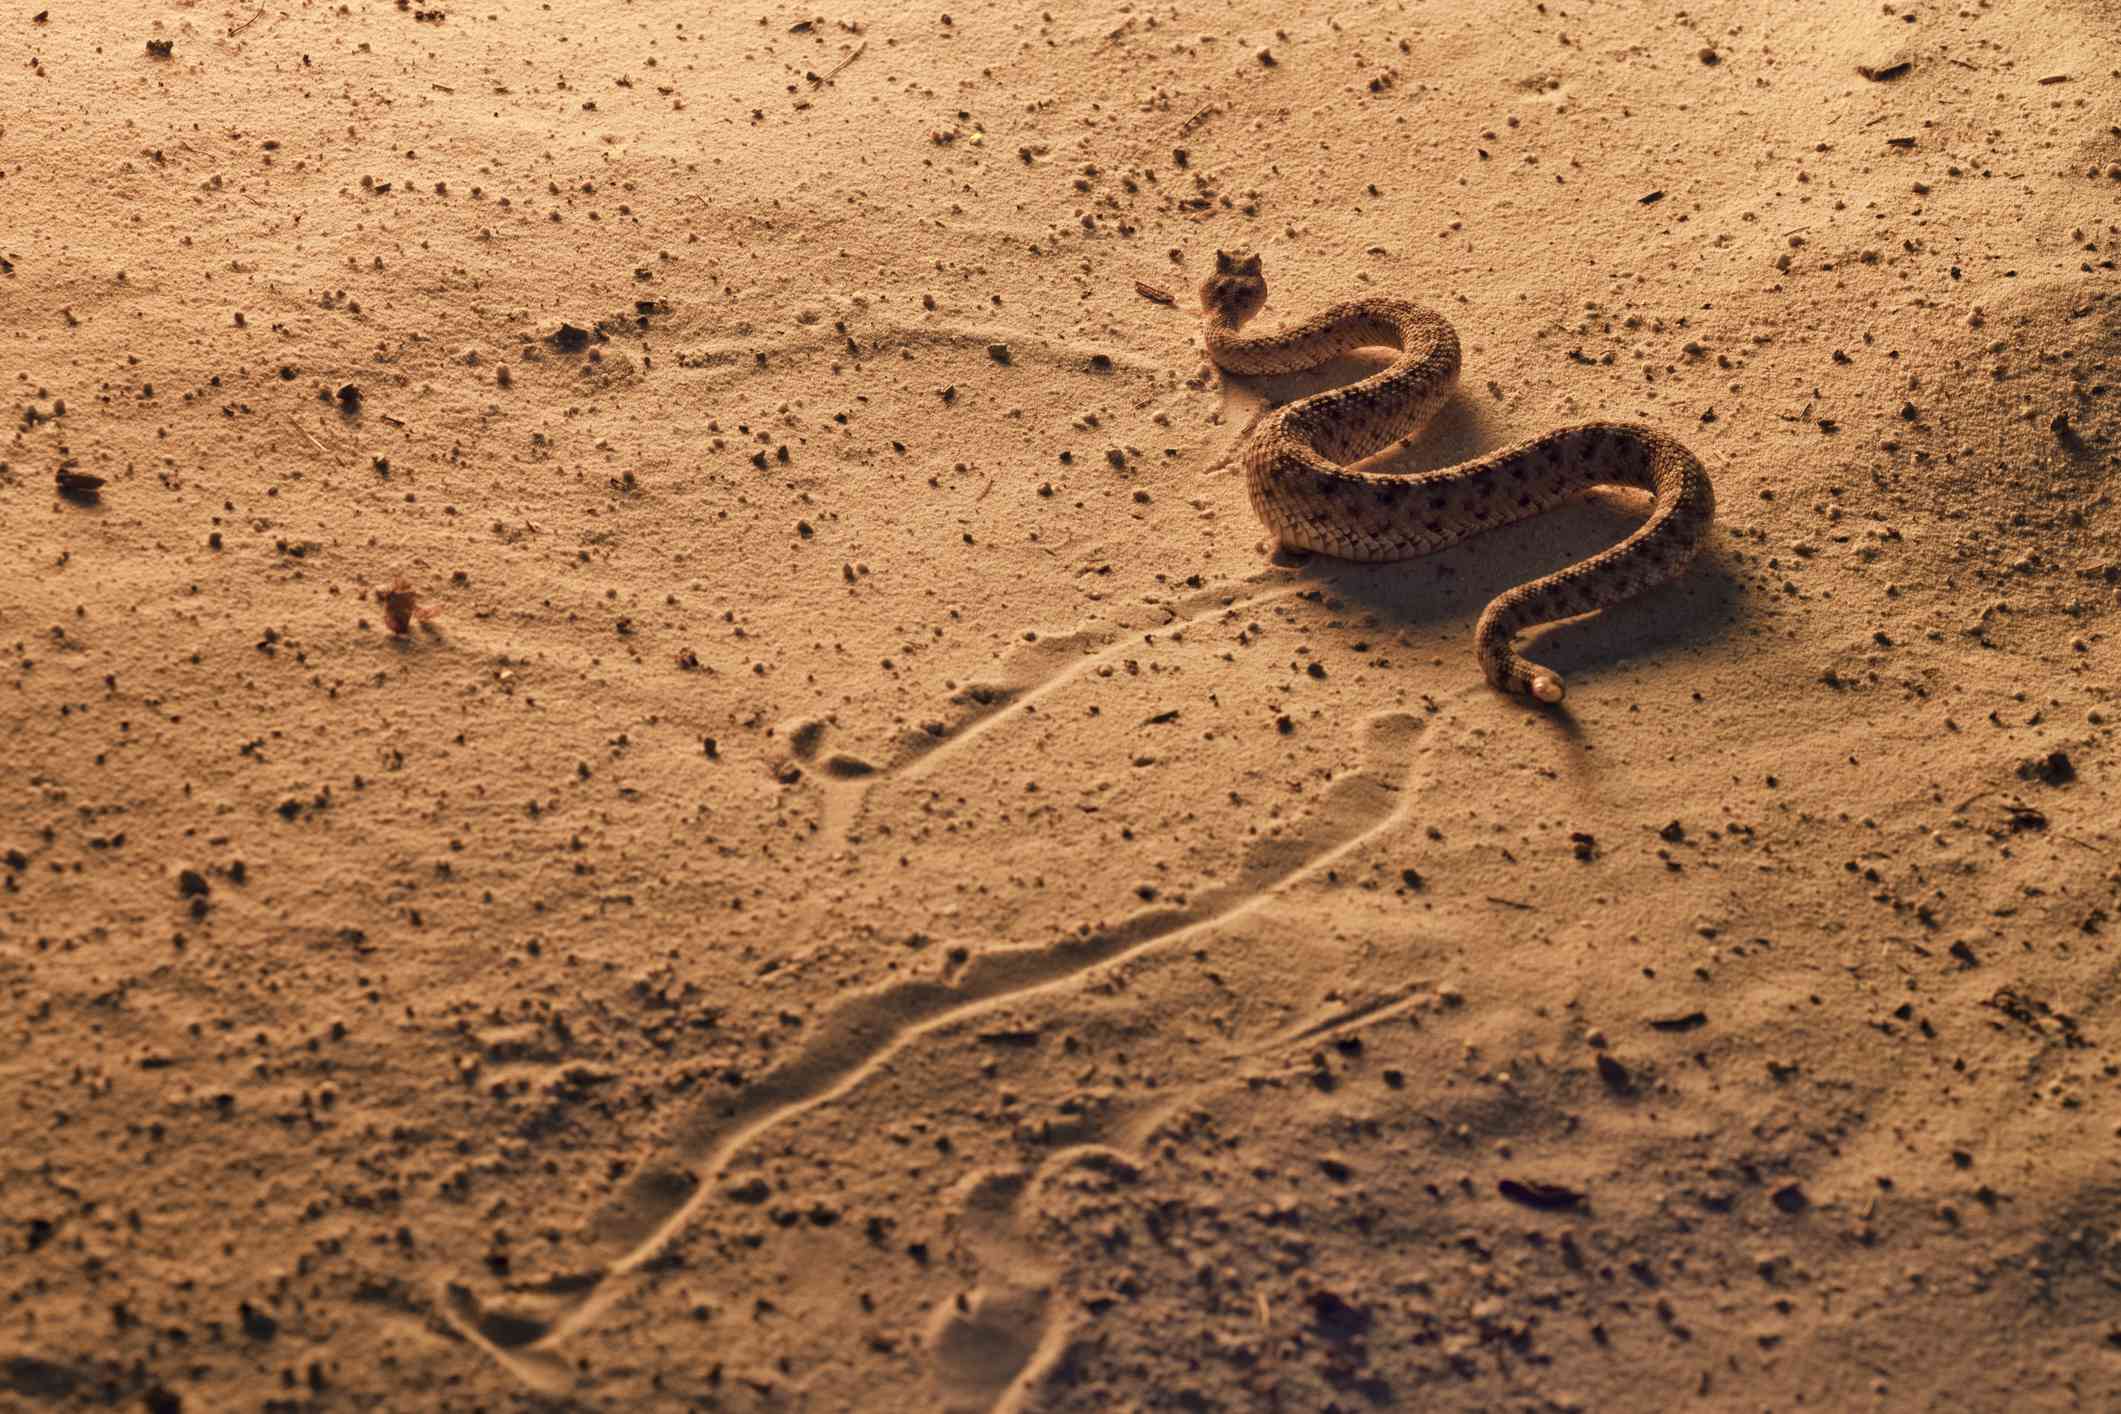 Serpiente de cascabel, Crotalus cerastes, sur de Arizona. Locomoción lateral a través de las dunas de arena al atardecer. Situación controlada